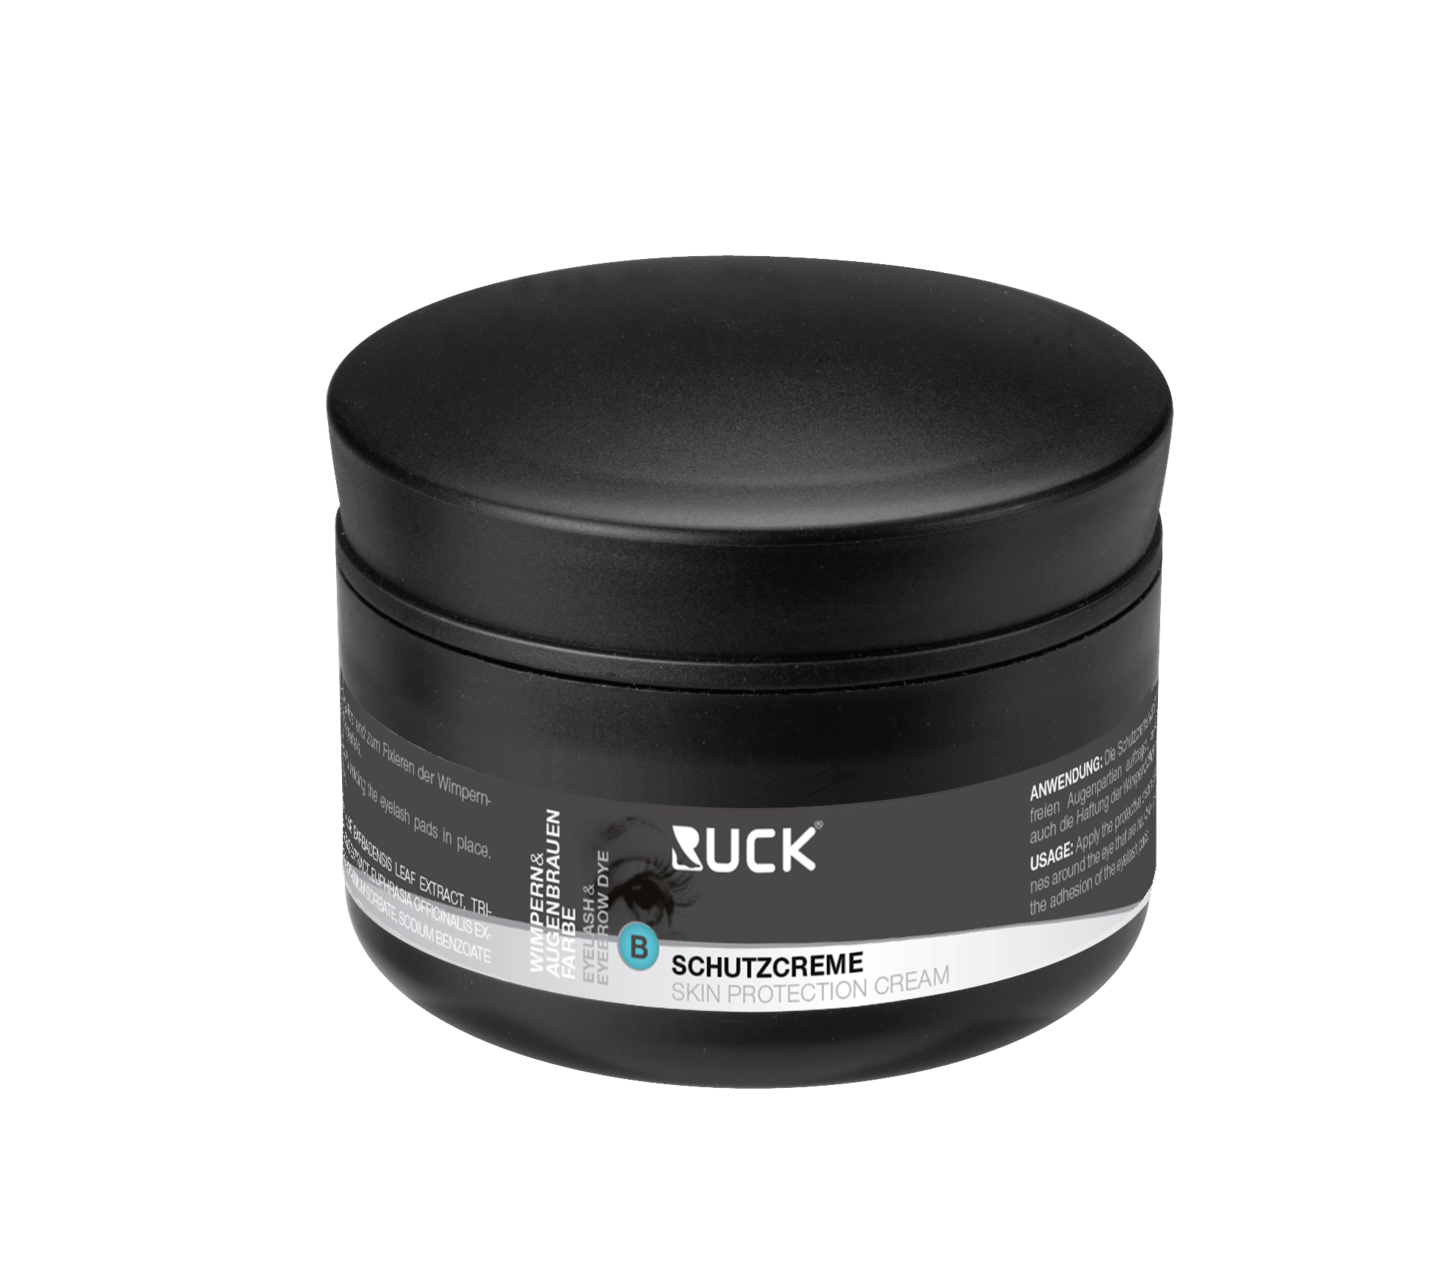 RUCK Wimpern- und Augenbrauenfarbe - Schutzcreme, 50 ml